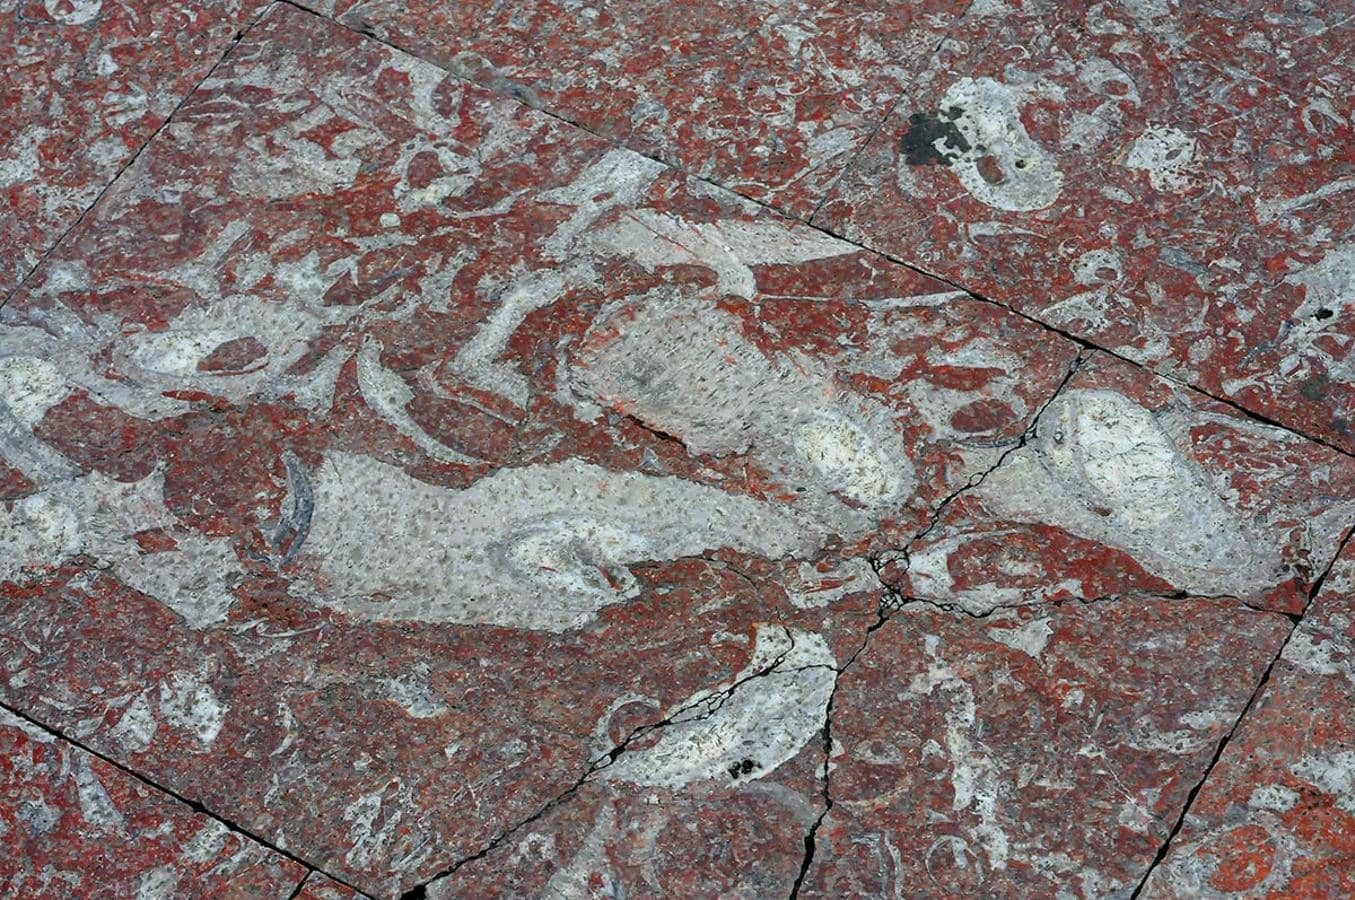 Manchas blancas que muestra la presencia de rudistas, moluscos de hace100 millones de años. Desde Puerta Real a la Catedral, un recorrido para descubrir la evolución de la Tierra, un paseo de la mano de paleontólogos de la UGR